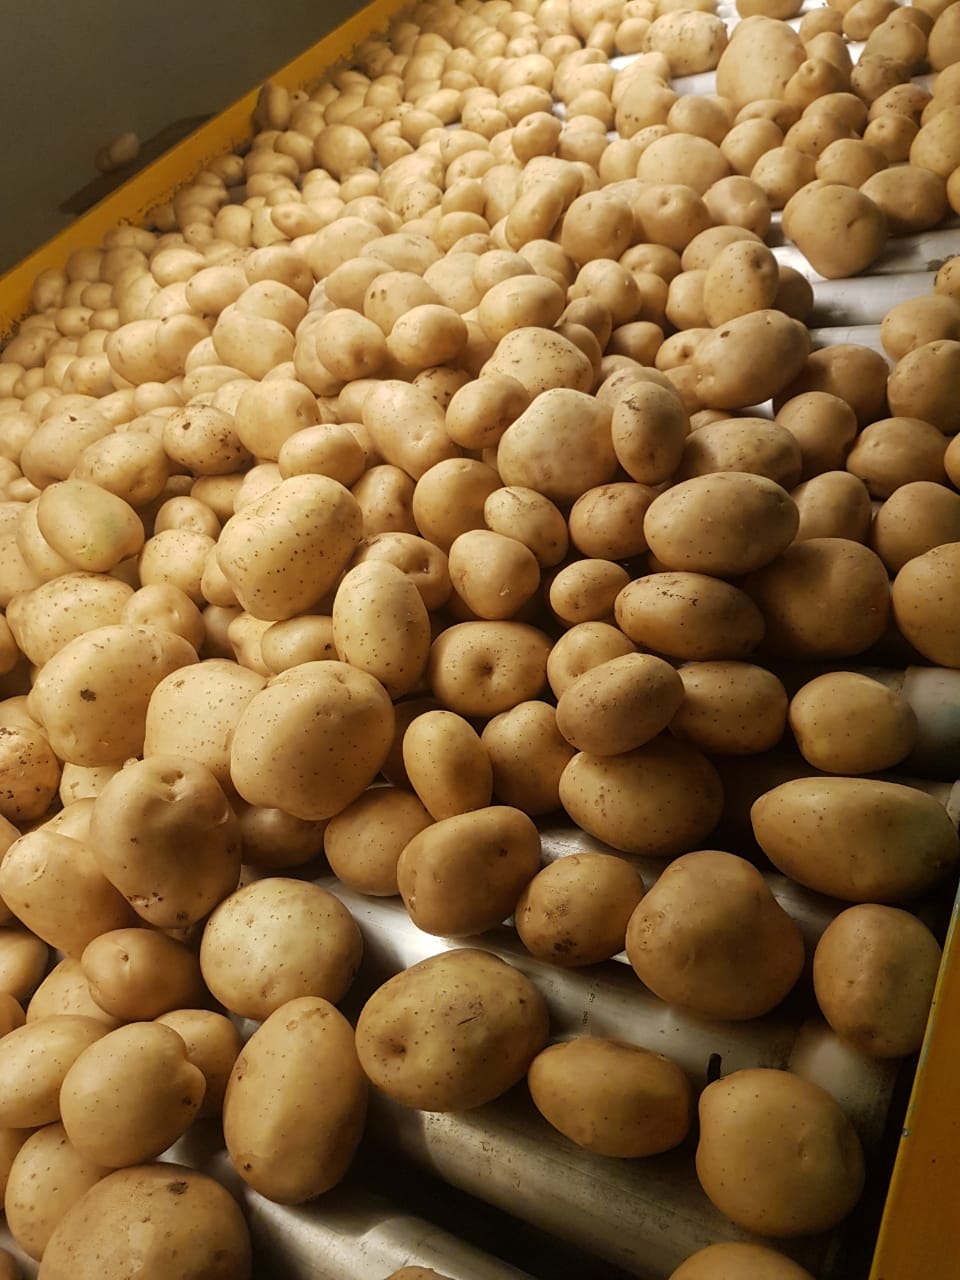 Cơ hội xuất khẩu khoai tây sang thị trường Campuchia NS-KT01-07F23